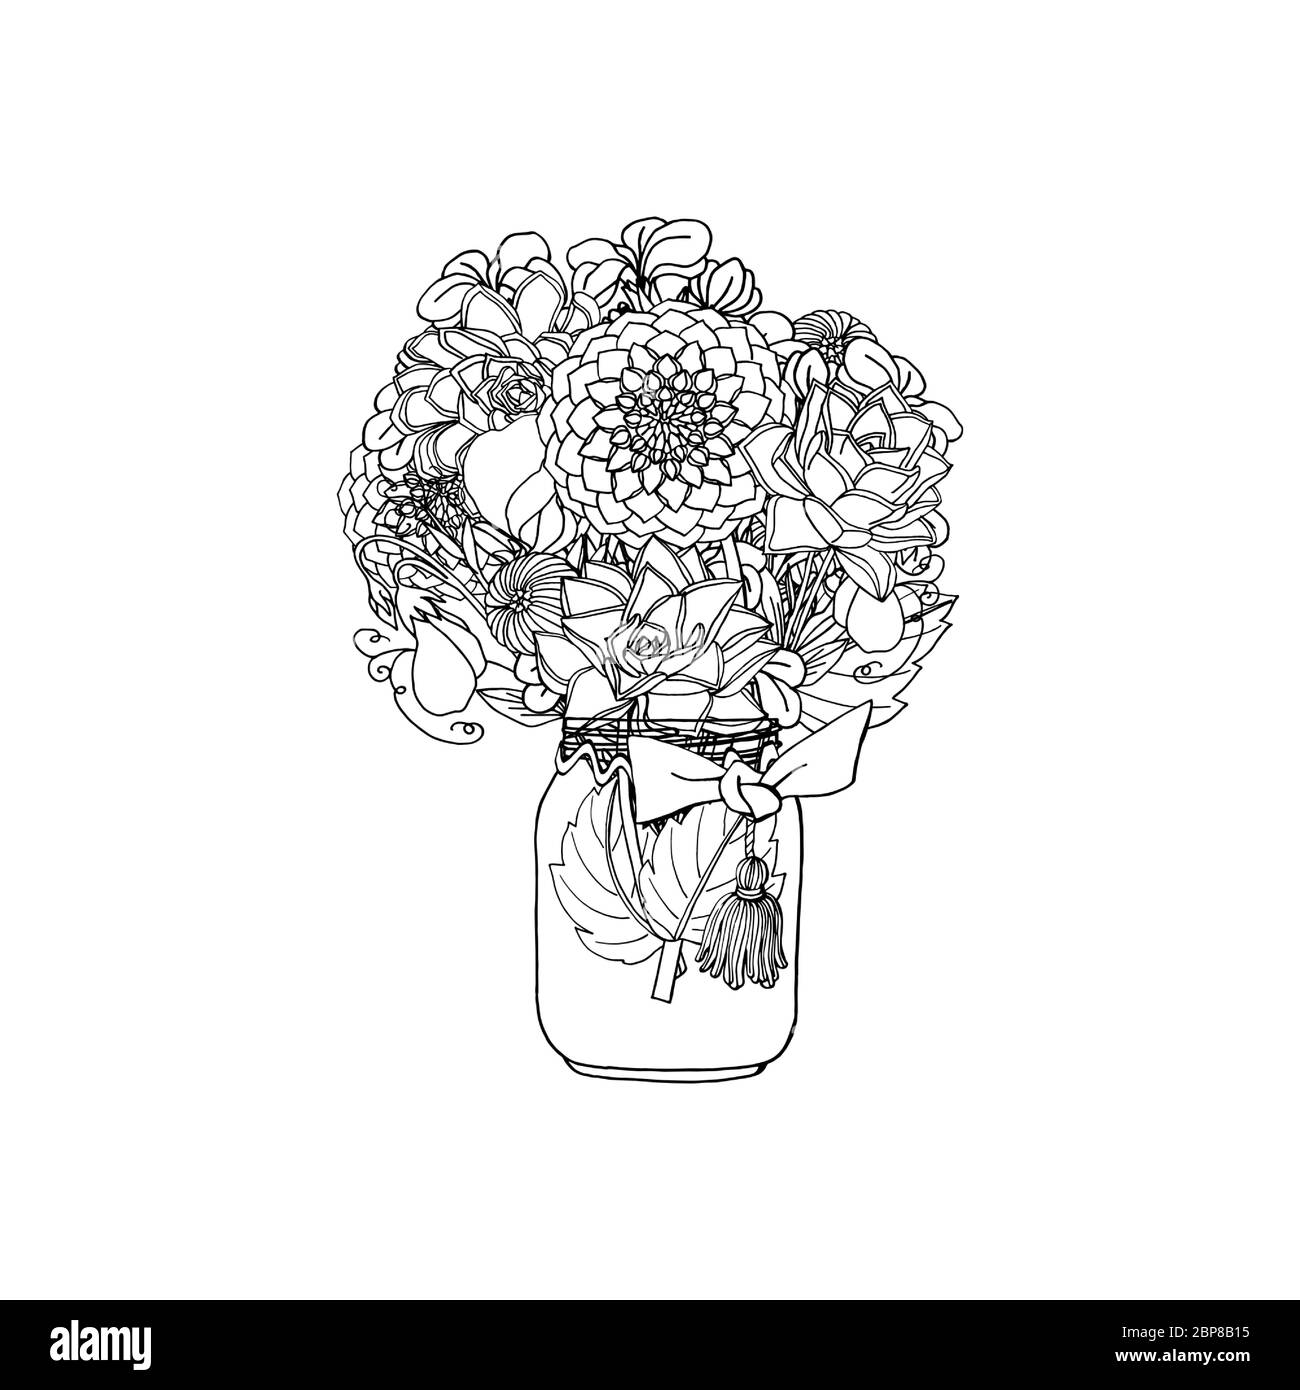 Handgezeichneter Doodle-Stil Bouquet aus verschiedenen Blumen, saftig, Pfingstrose, Dahlie, Stockblume, süße Erbse Stock Vektor